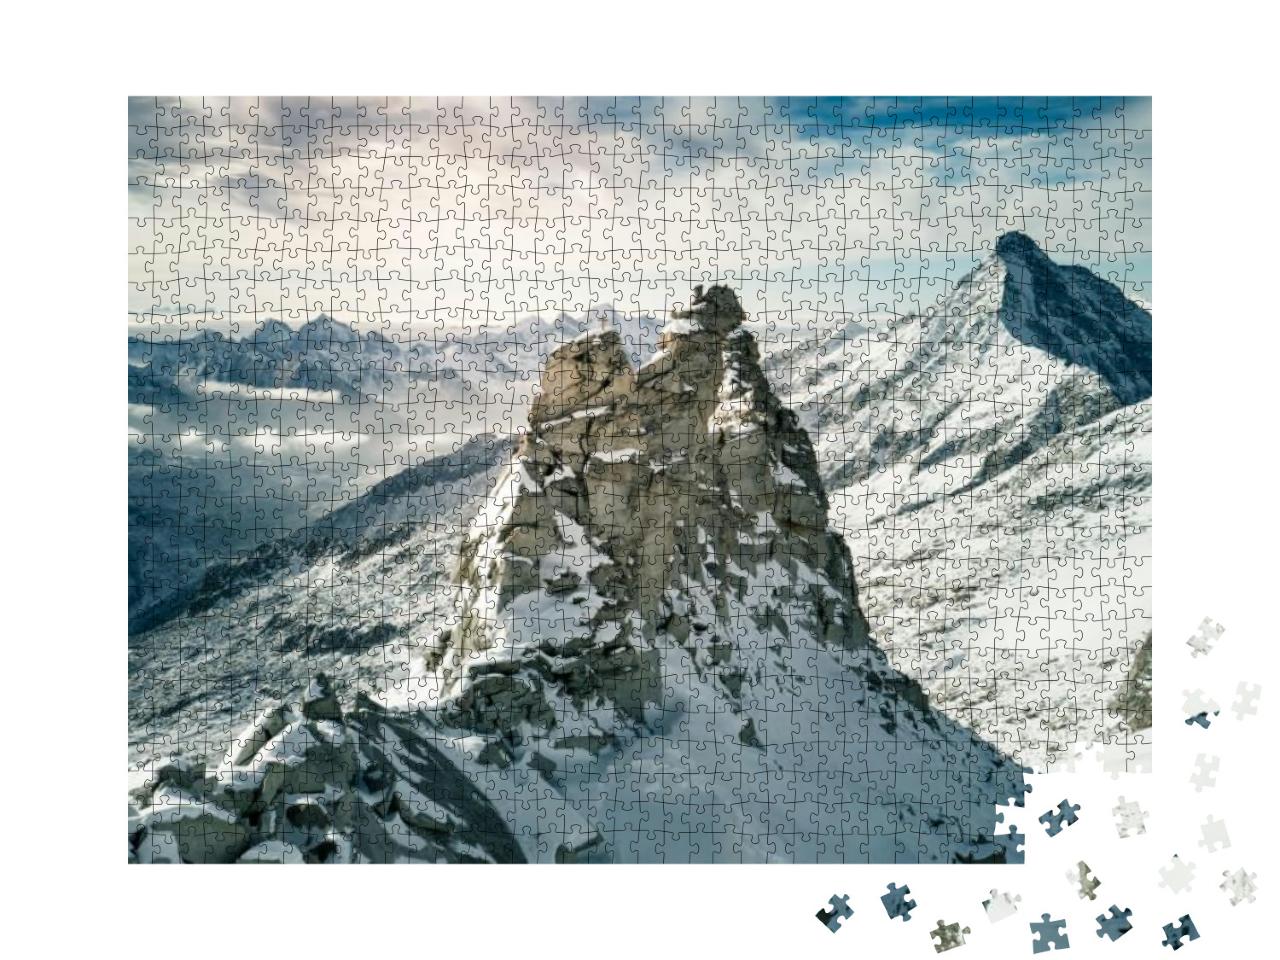 Puzzle 1000 Teile „Luftaufnahme am Hintertuxer Gletscher in Österreich“